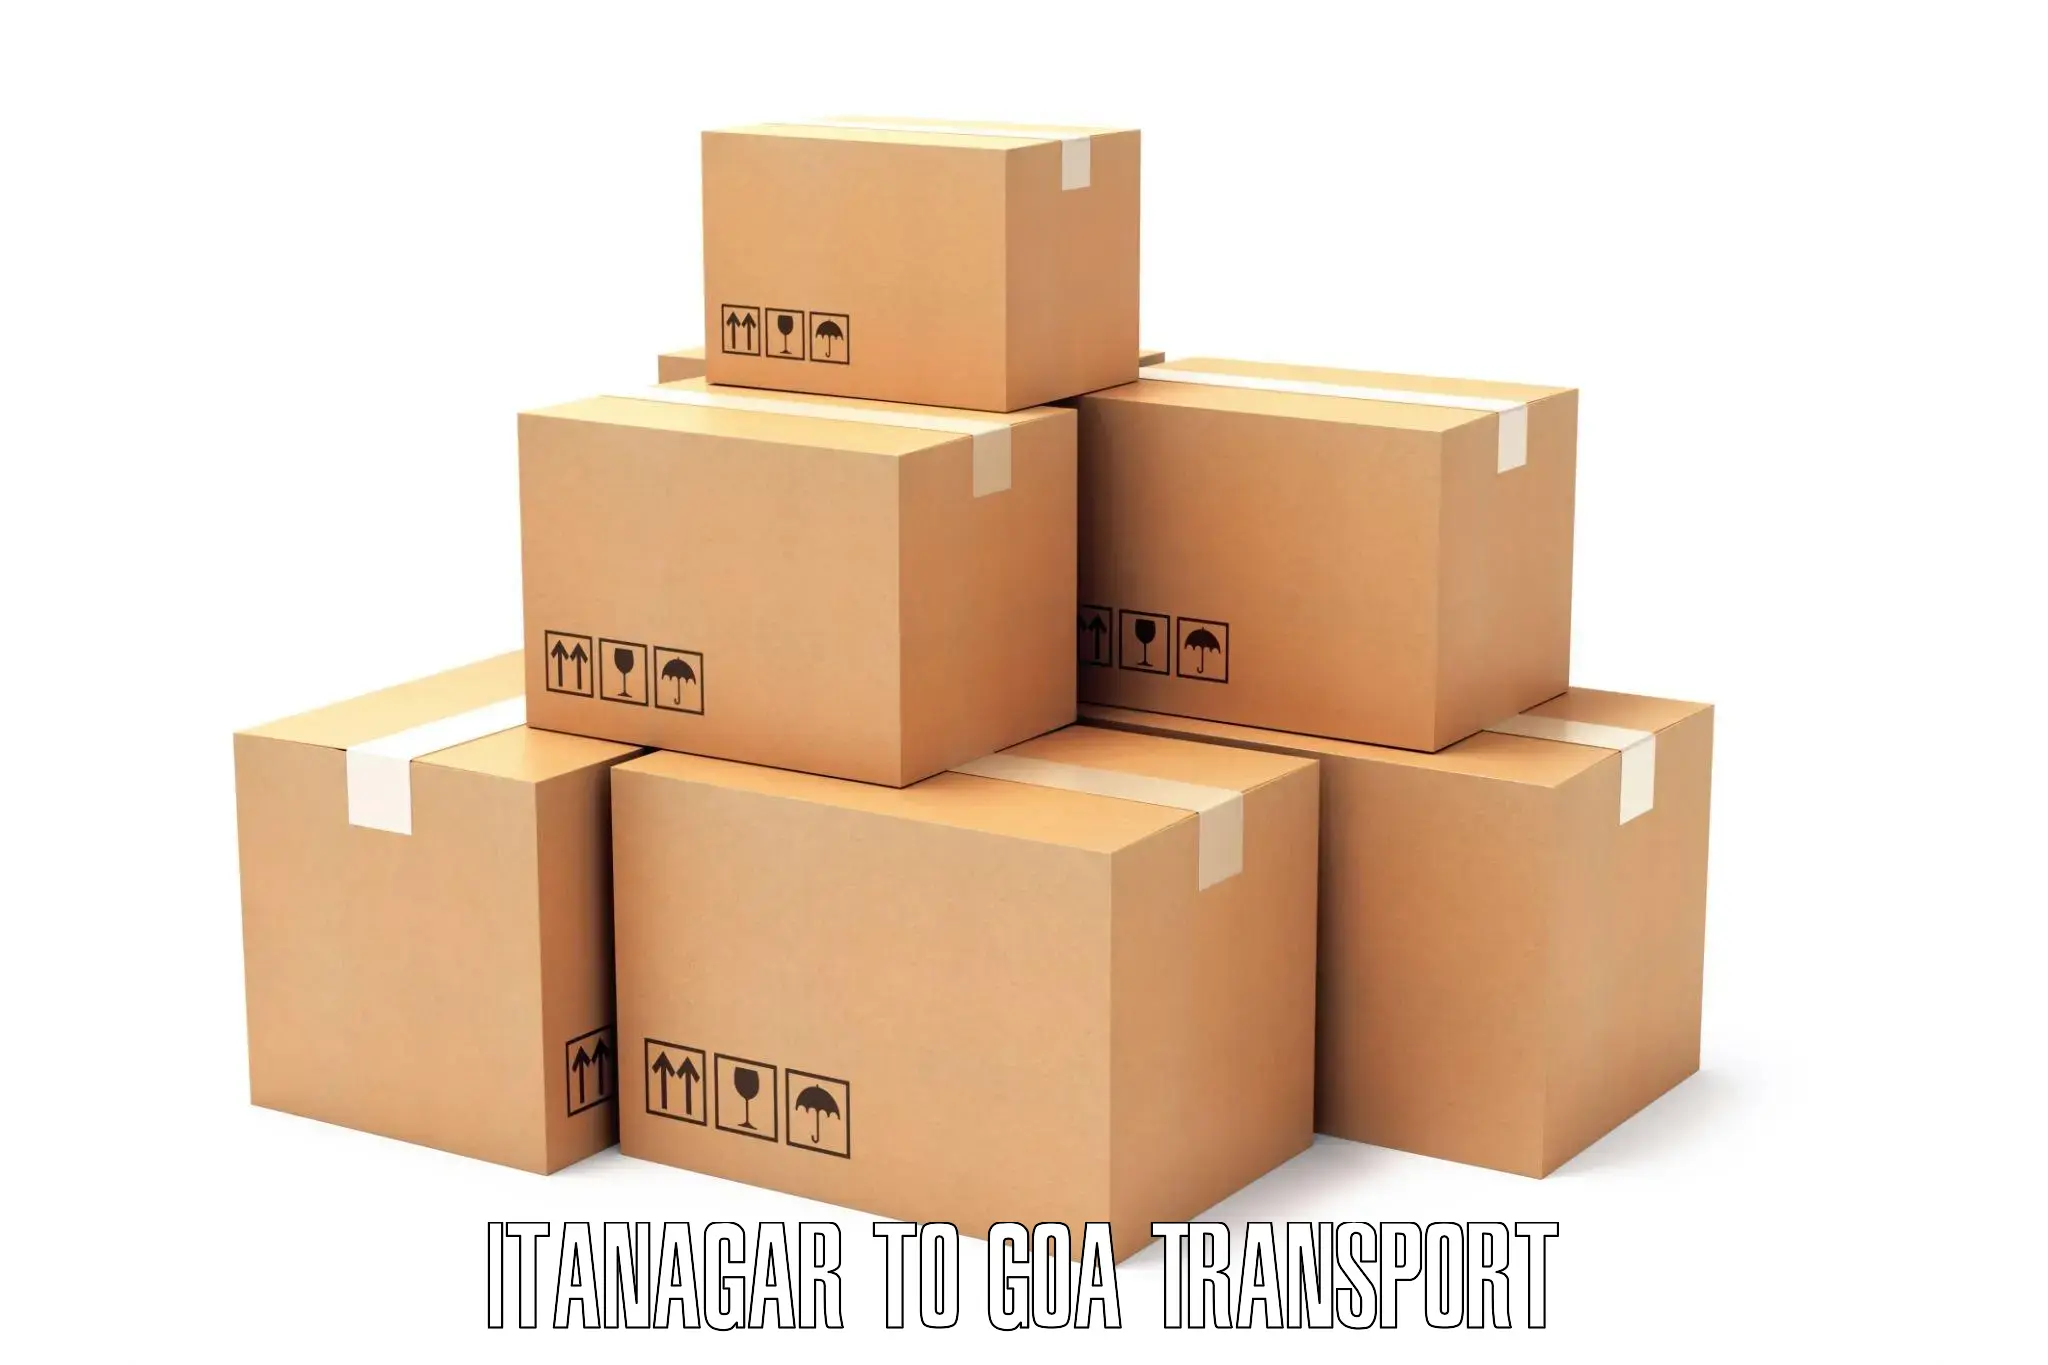 Shipping services in Itanagar to Goa